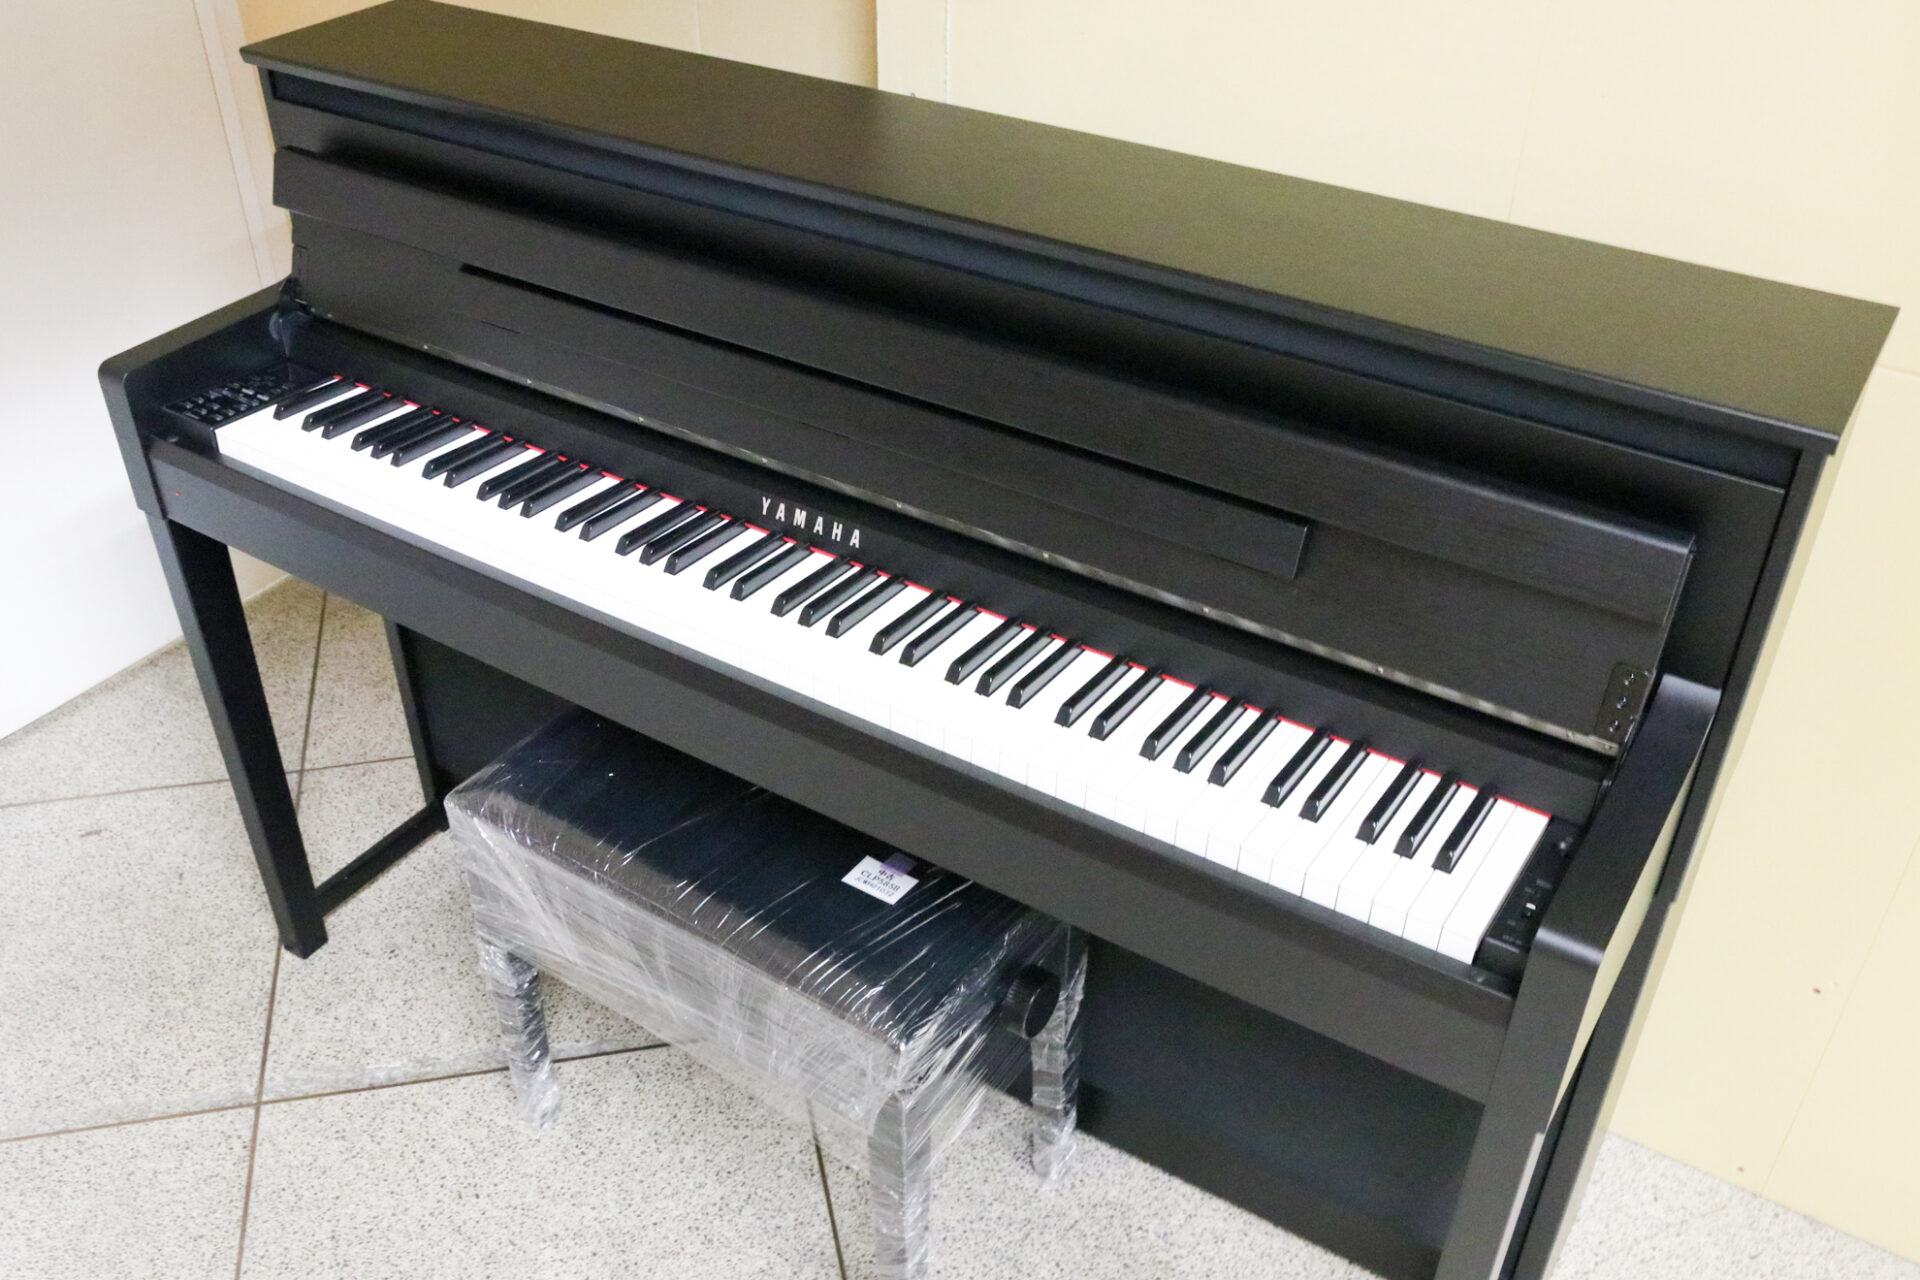 YAMAHA製電子ピアノ 鍵盤の不具合、格安で修理交換承ります - 鍵盤楽器